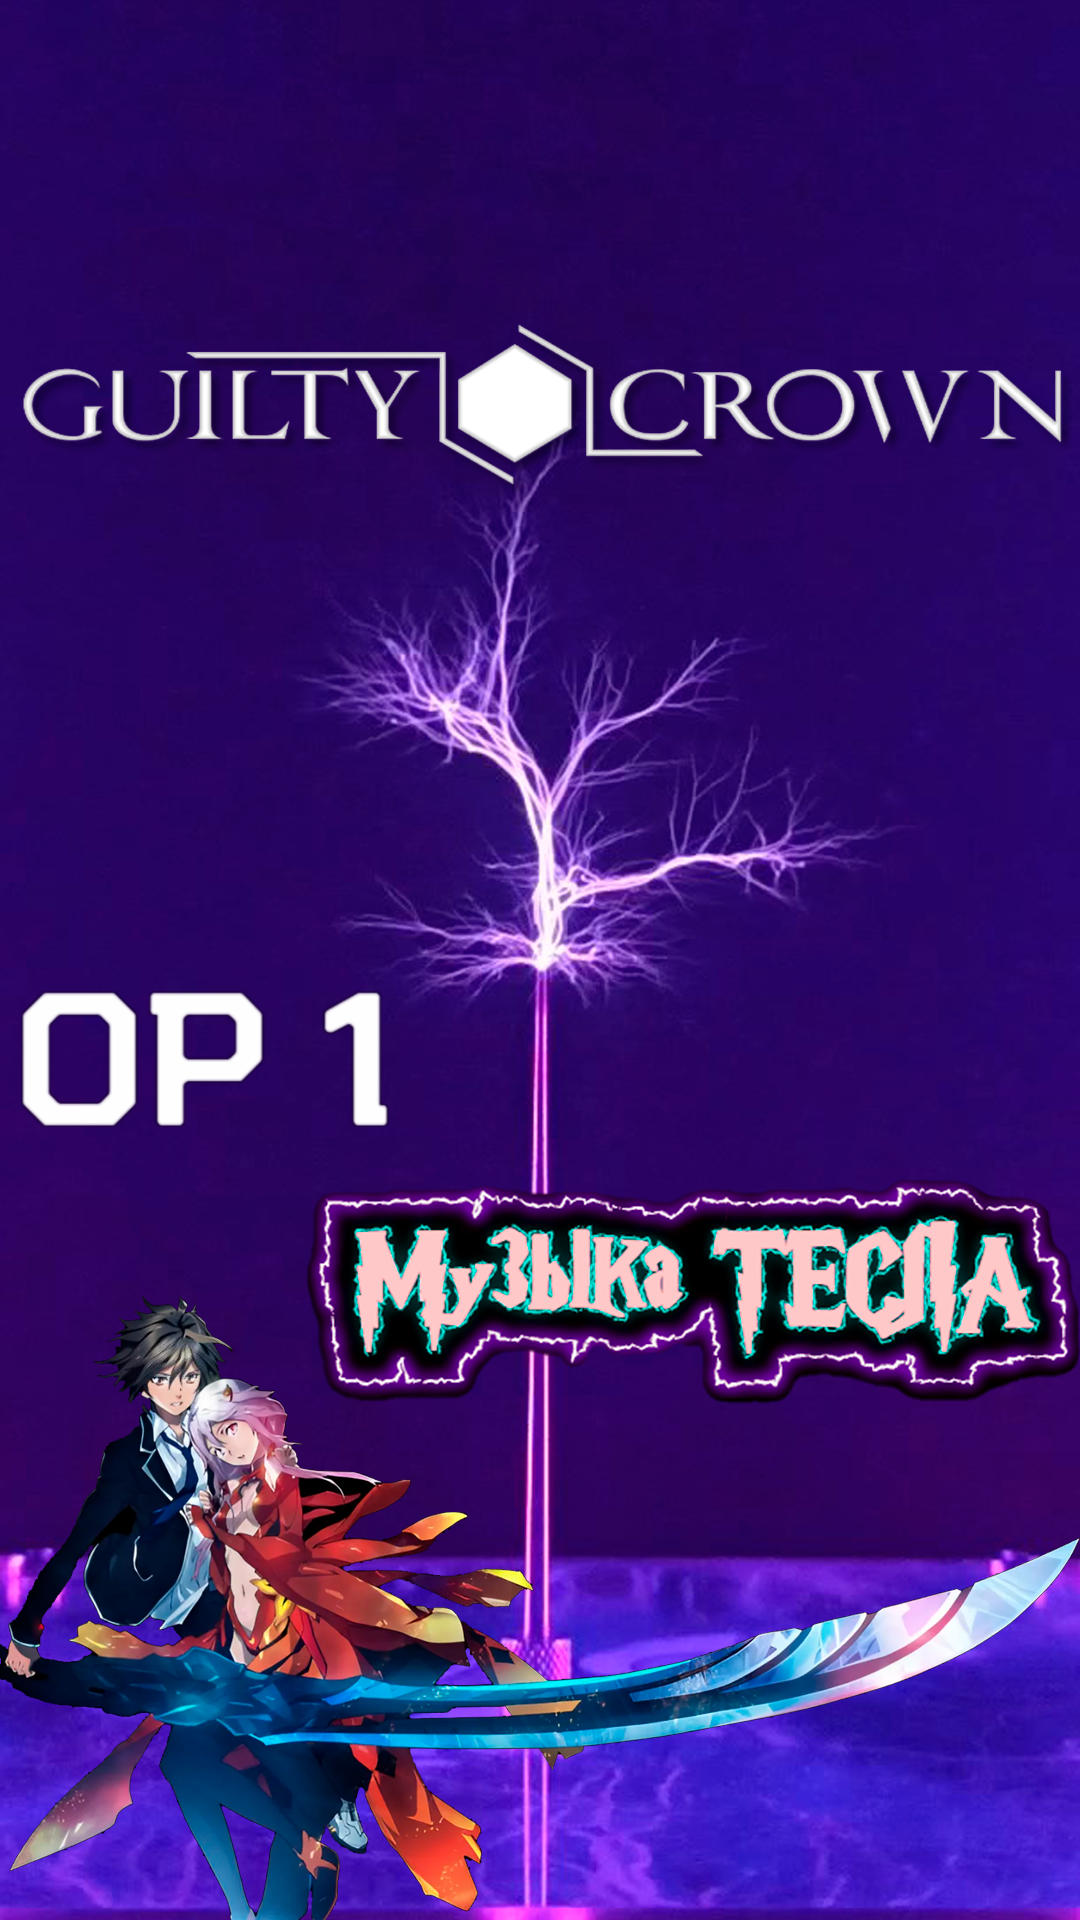 My Dearest - Guilty Crown OP1 Tesla Coil Mix #музыкатесла